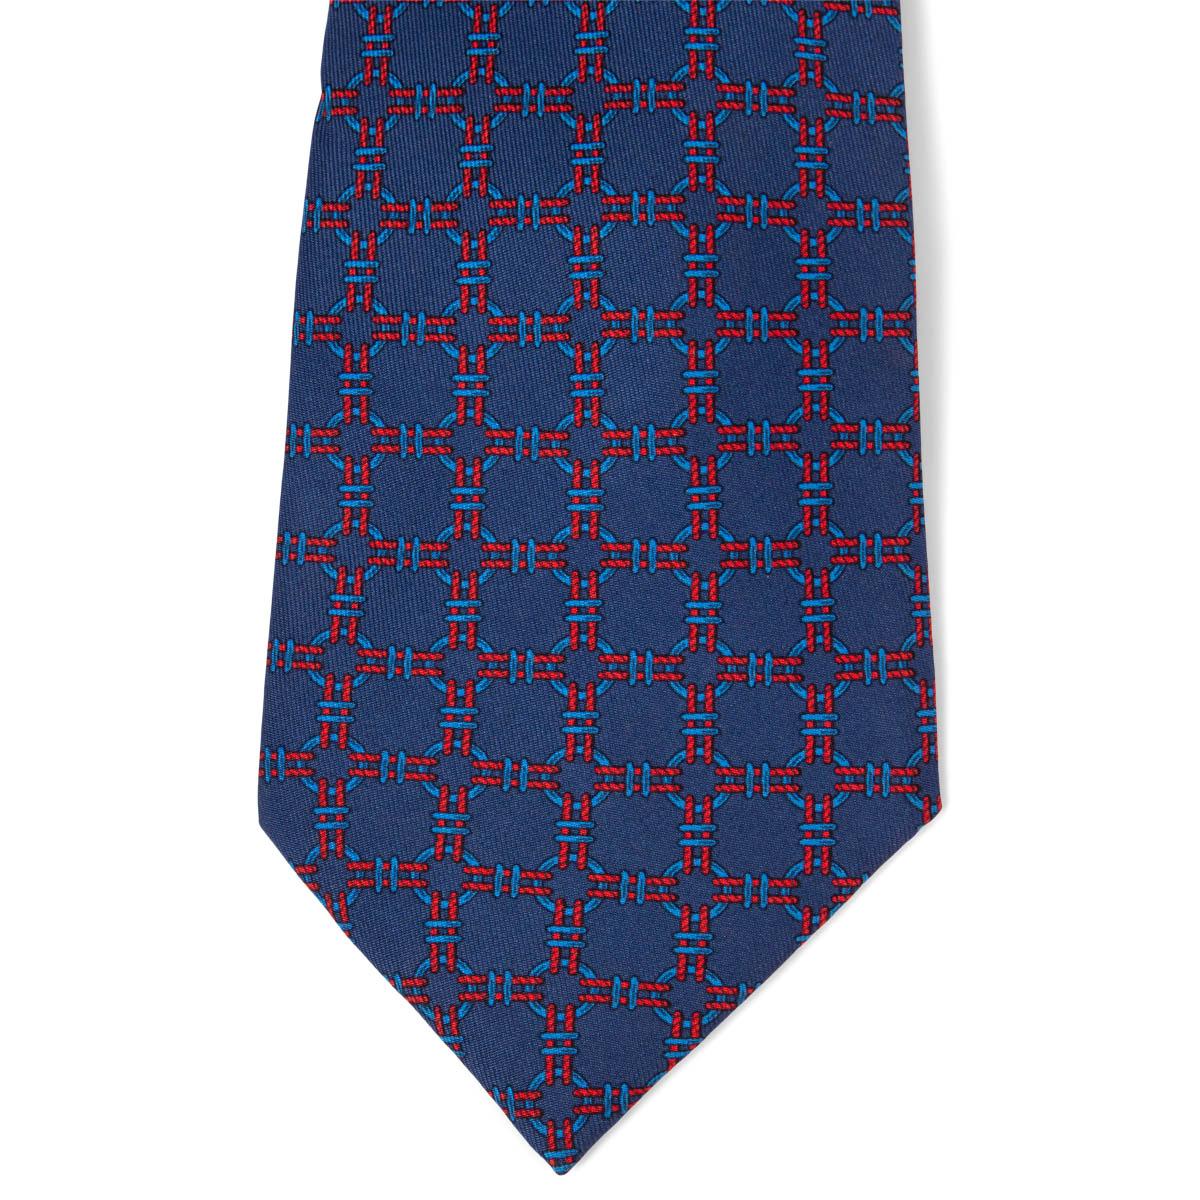 Cravates Hermes Ropes & Rings 100% authentiques en twill de soie bleu foncé et rouge (100%). A été porté et est en excellent état. Pas de boîte.

Mesures
Modèle	668
Longueur	156cm (60.8in)
Point le plus large	9cm (3.54in)

Toutes nos annonces